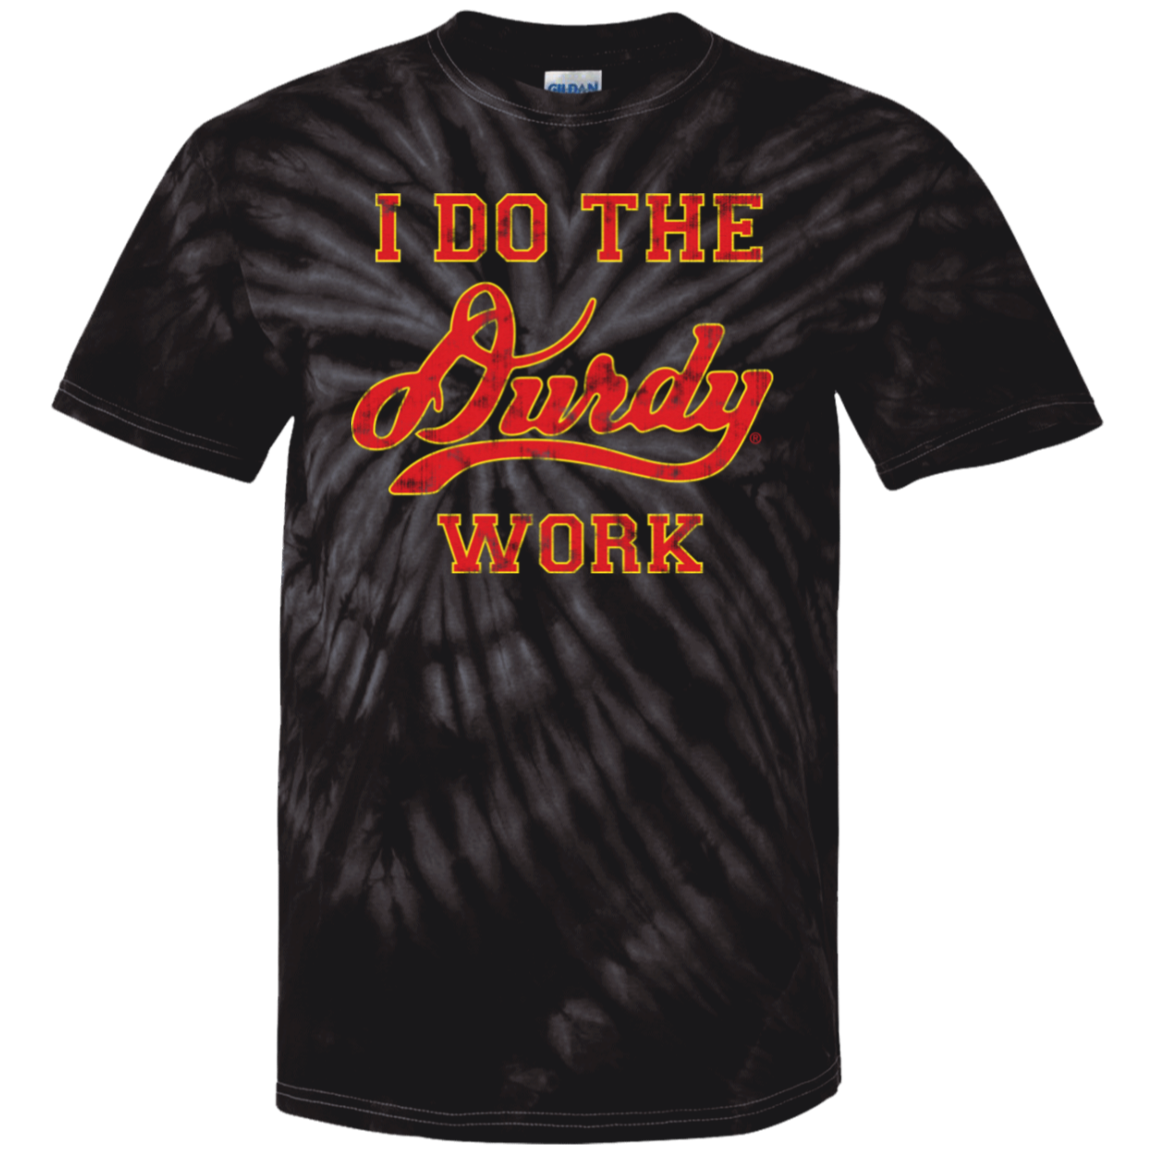 Durdy Work 100% Cotton Tie Dye T-Shirt